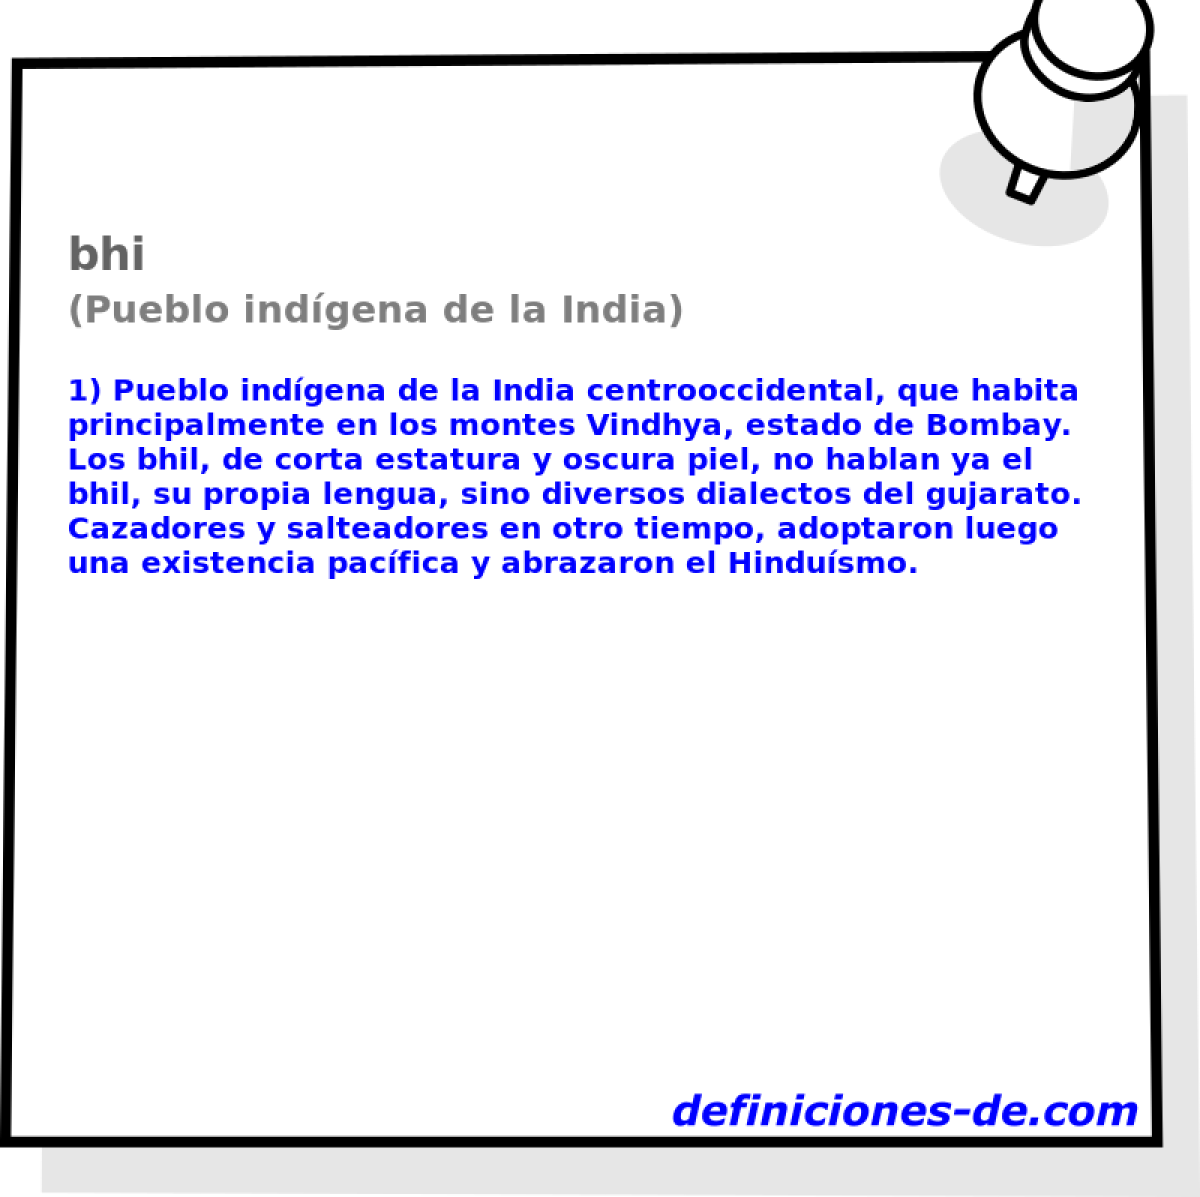 bhi (Pueblo indgena de la India)